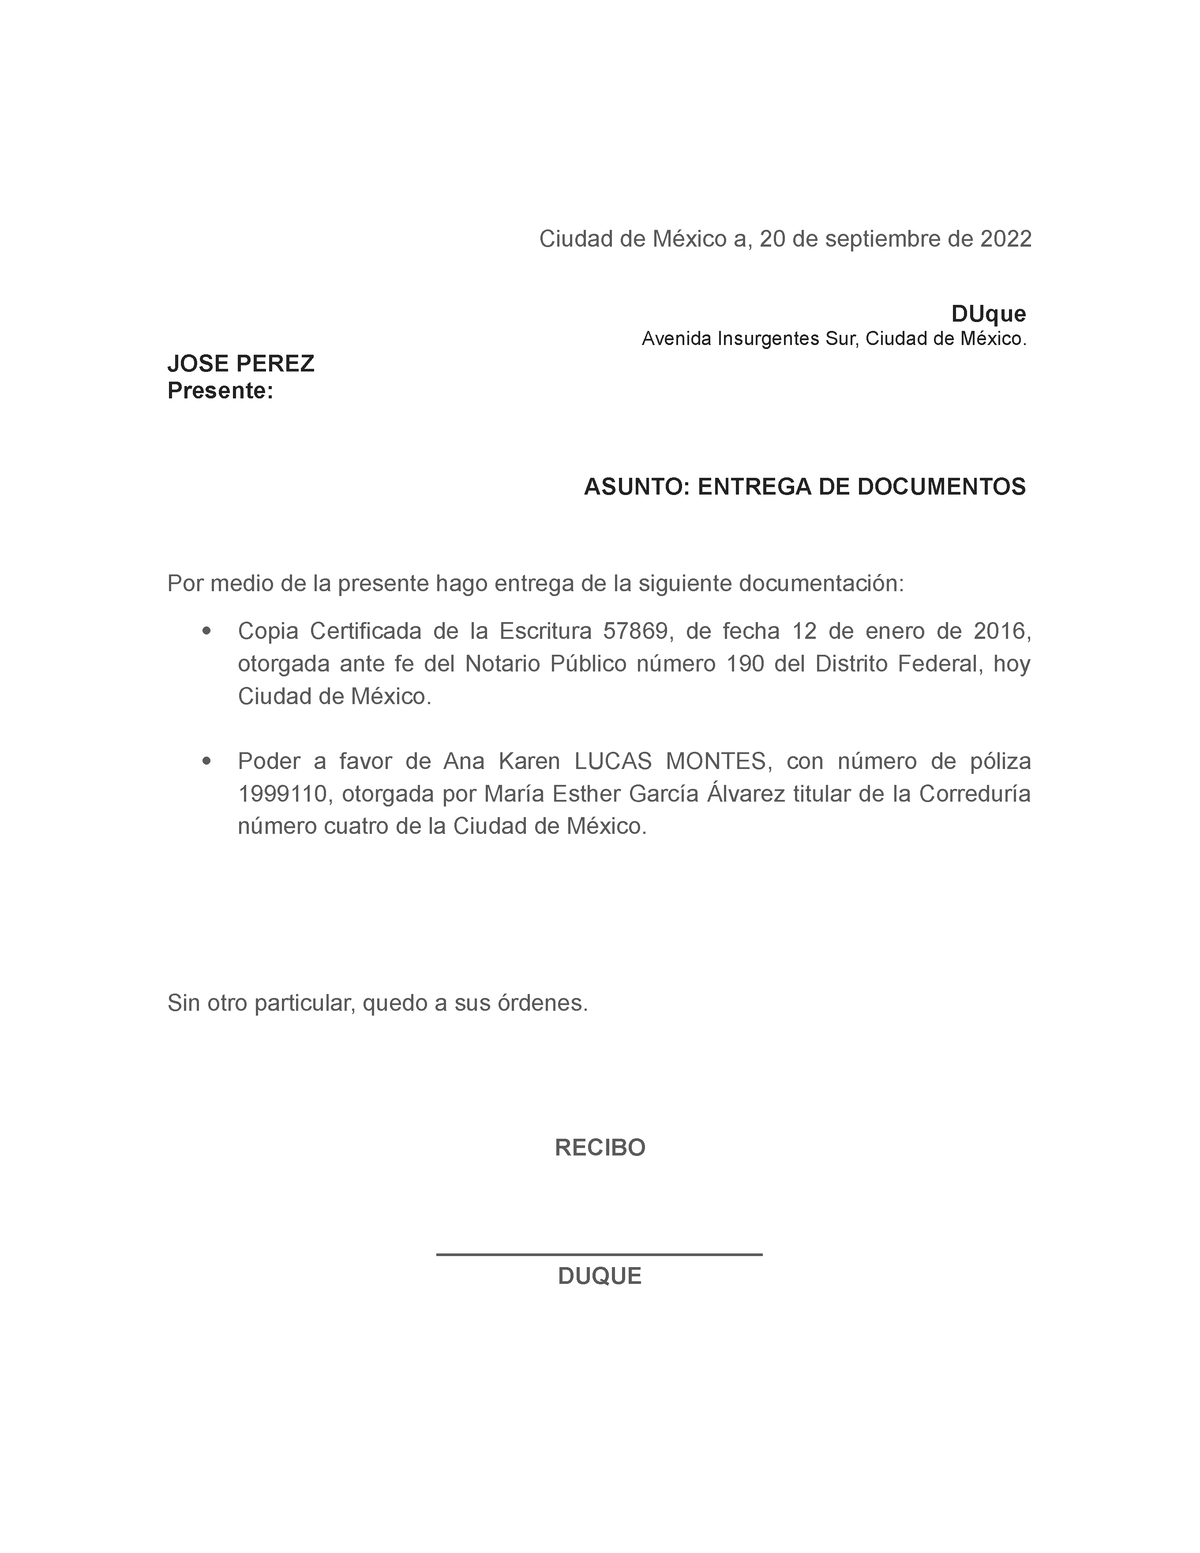 Acuse Entrega De Documentos Dumont Ciudad De México A 20 De Septiembre De 2022 Duque Avenida 7861